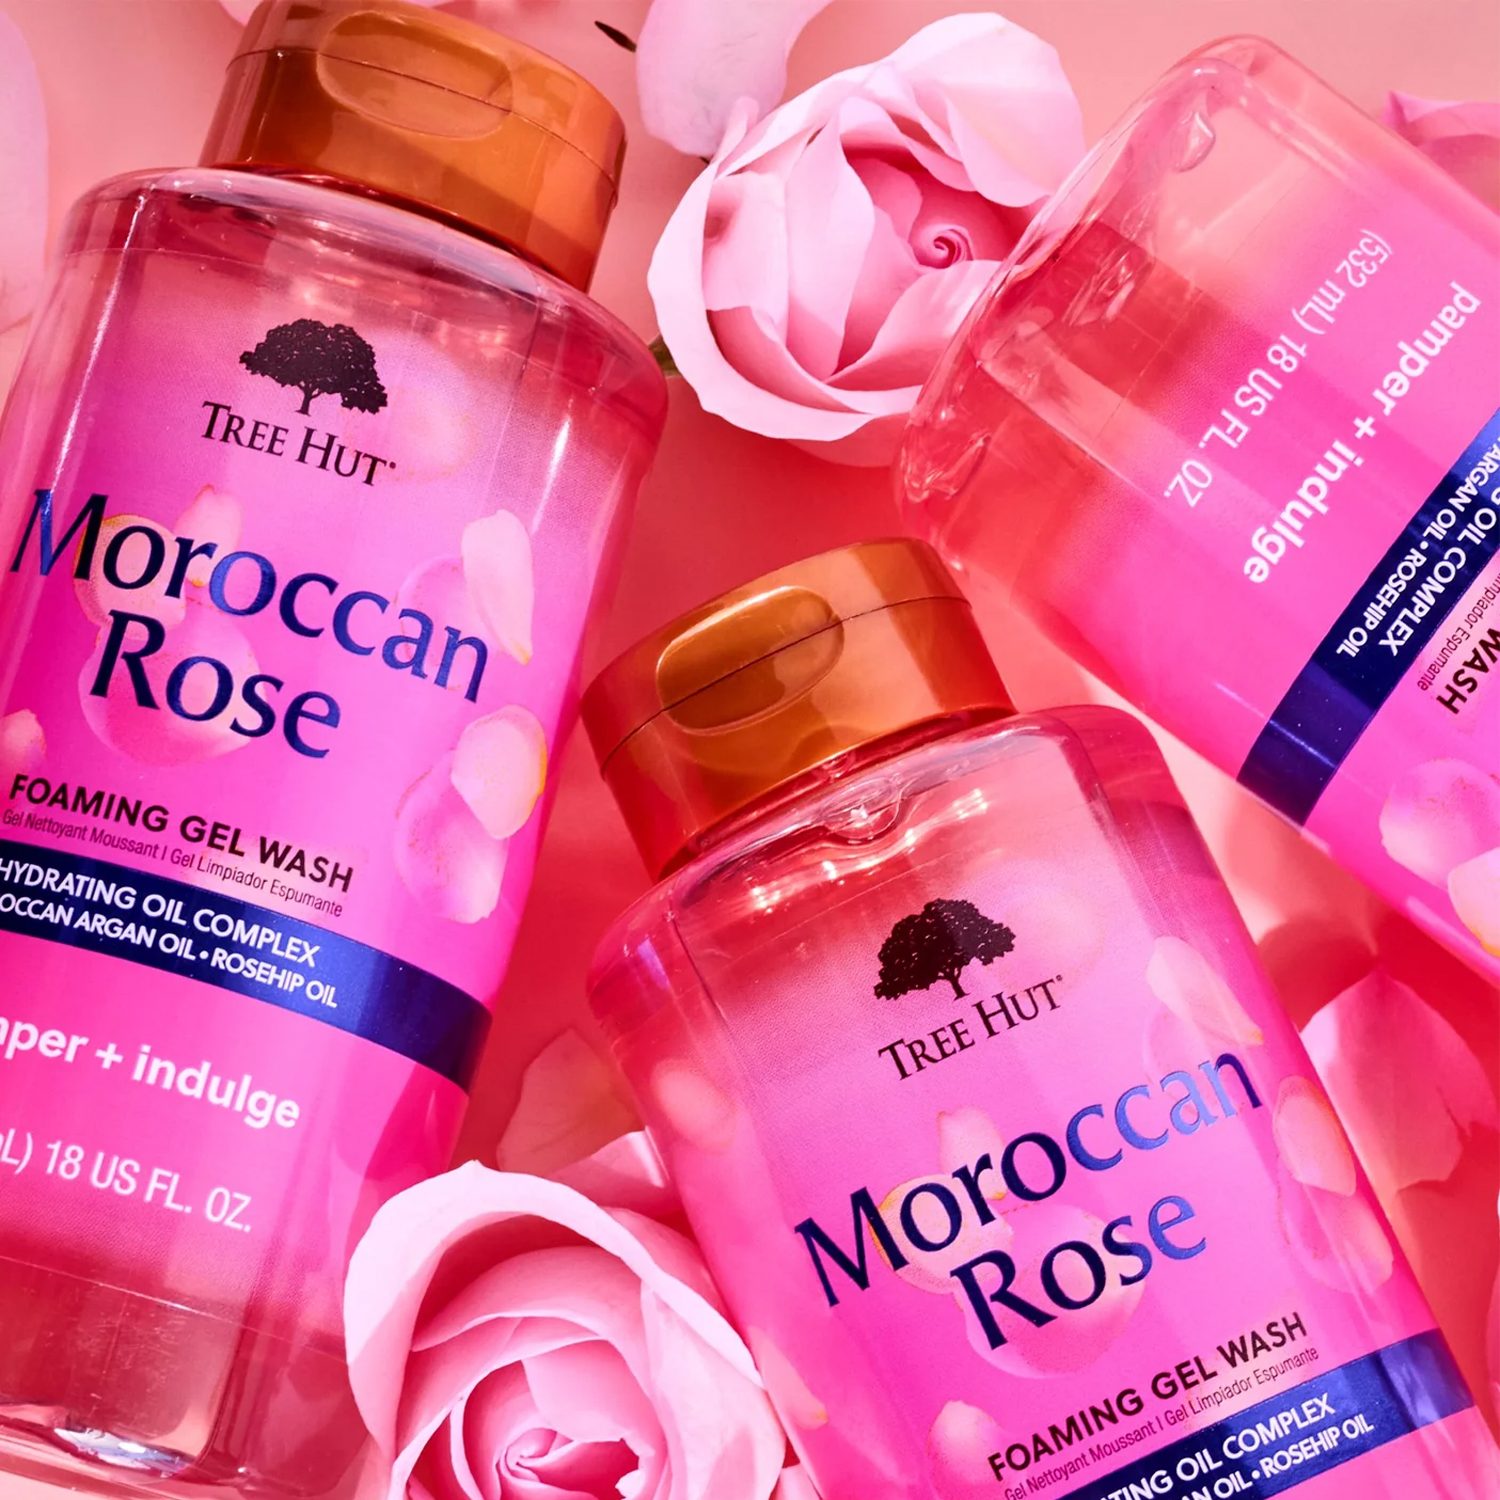 Jabón en Gel espumoso para Ducha Moroccan Rose, Tree Hut